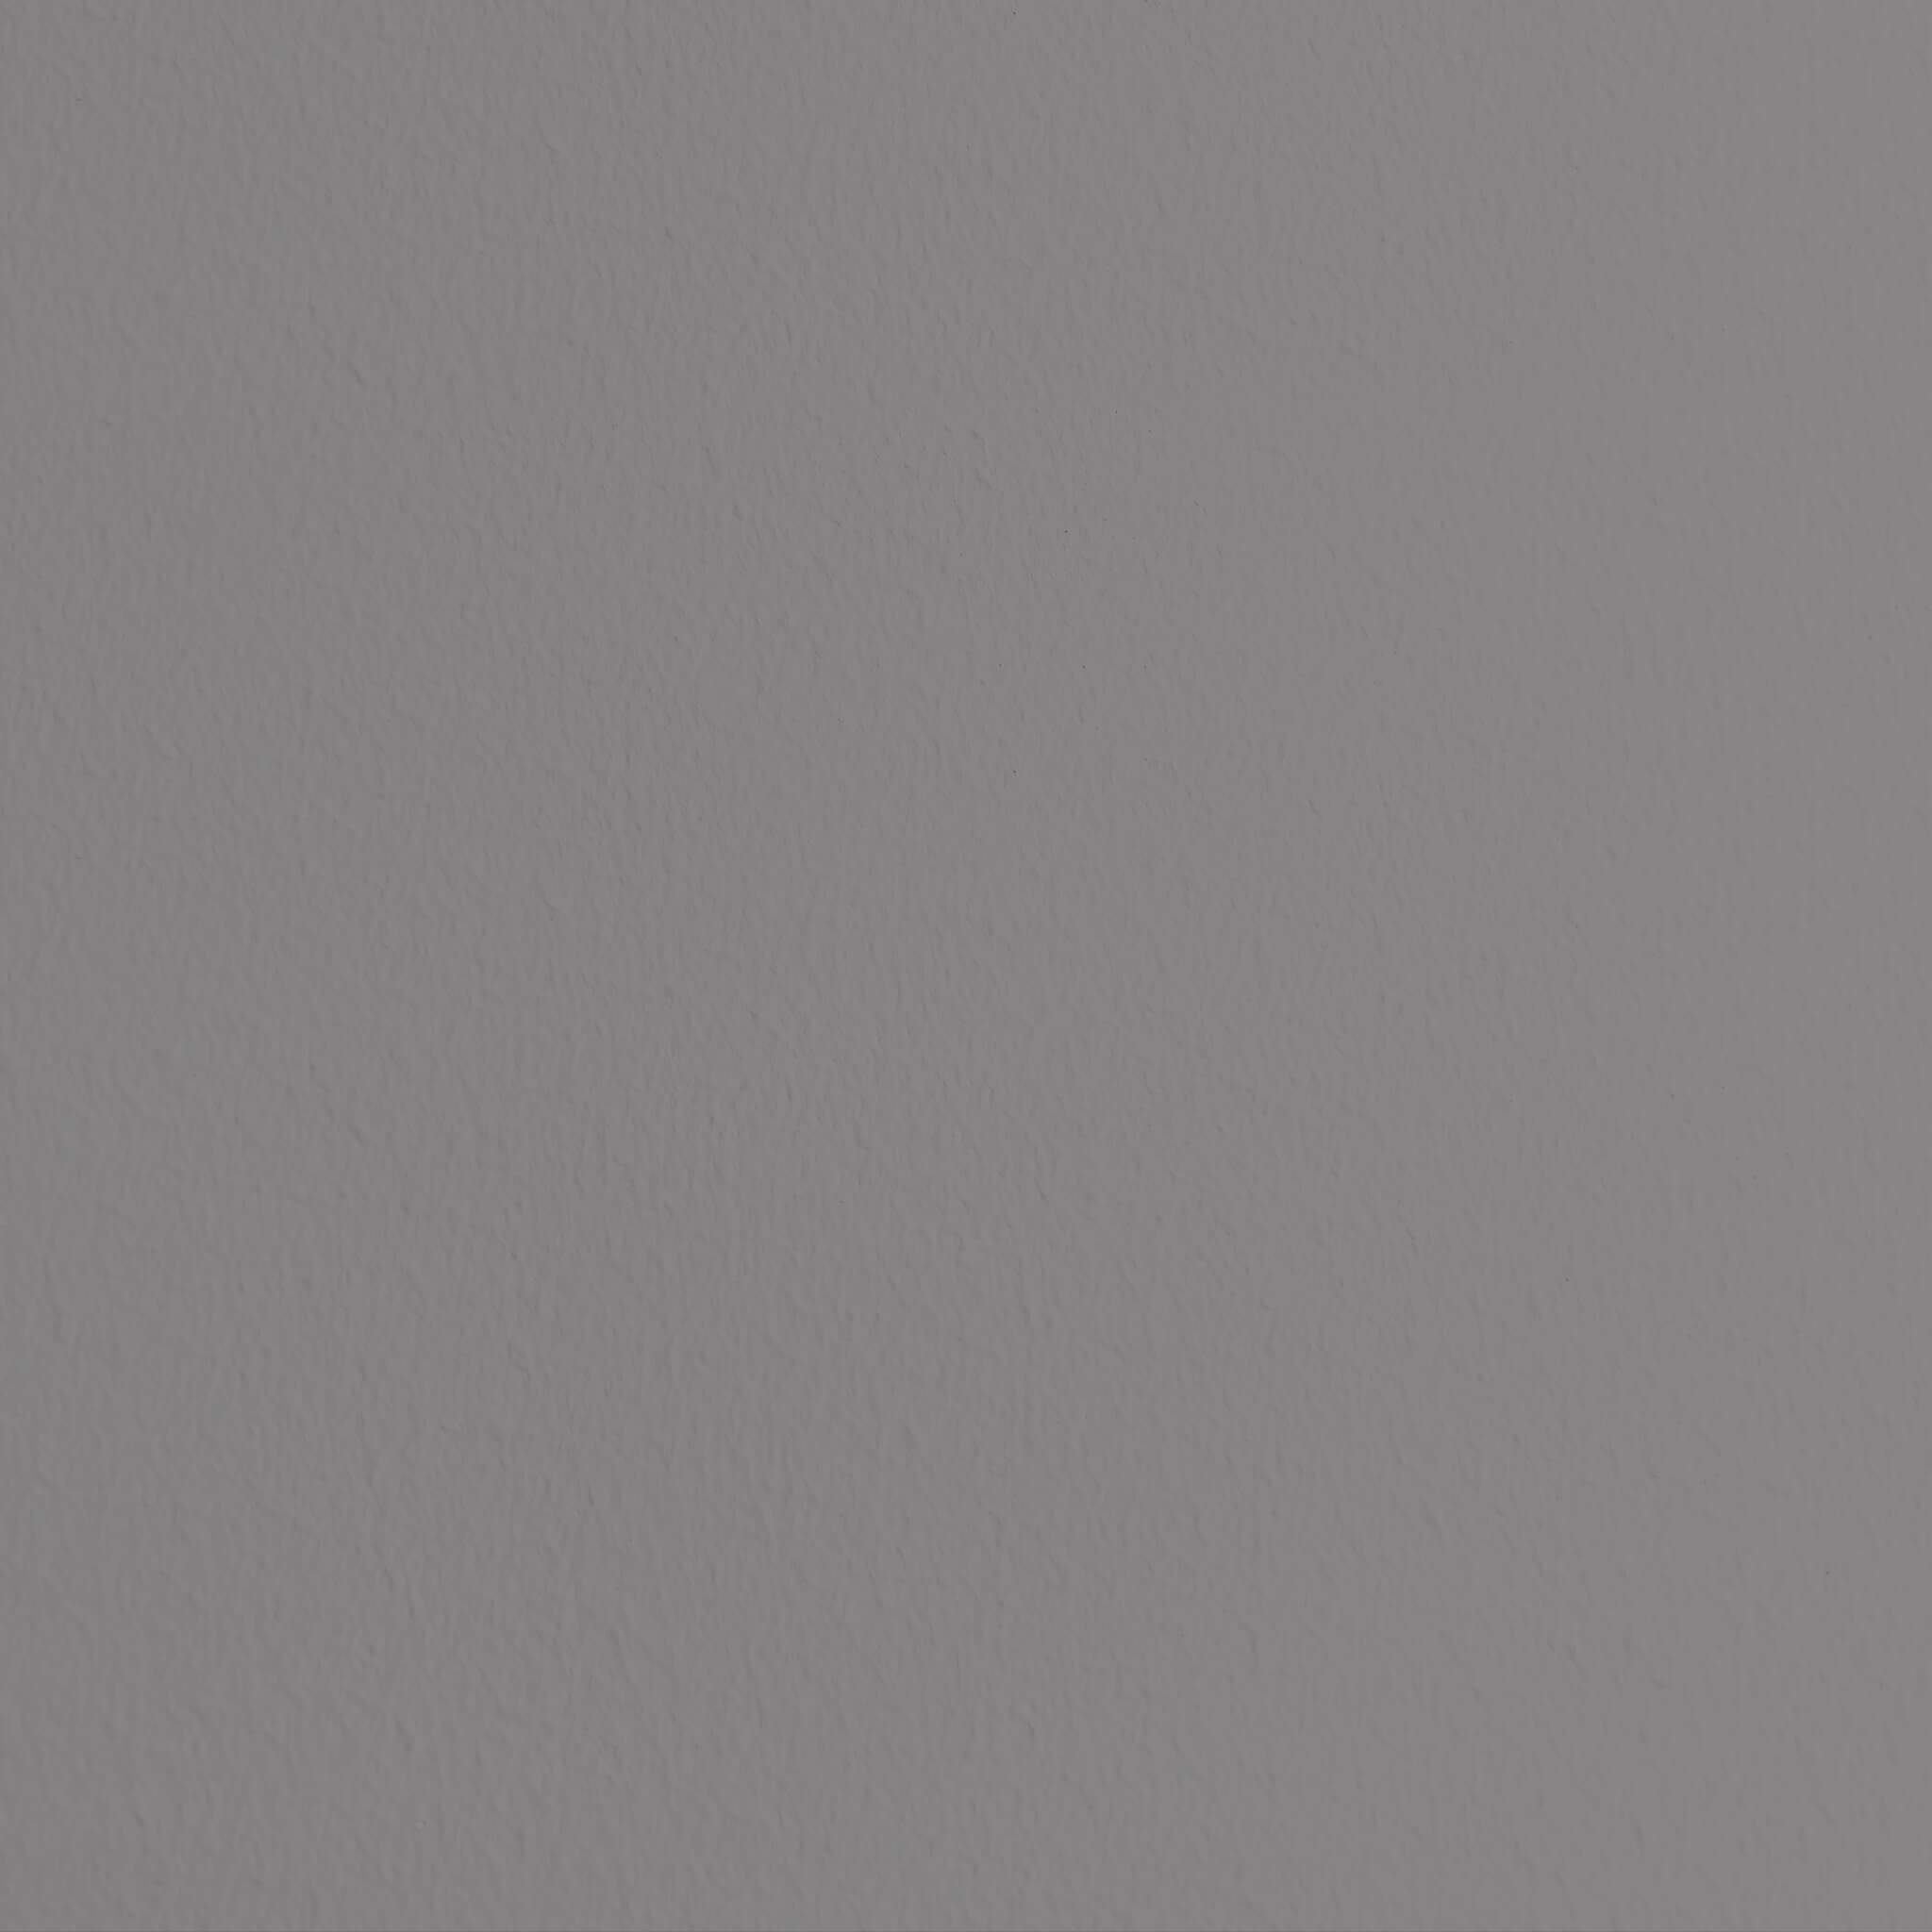 Gray Slate: Matte, Monotonous, Plain, Solid pattern. 2050x2050 HD Wallpaper.